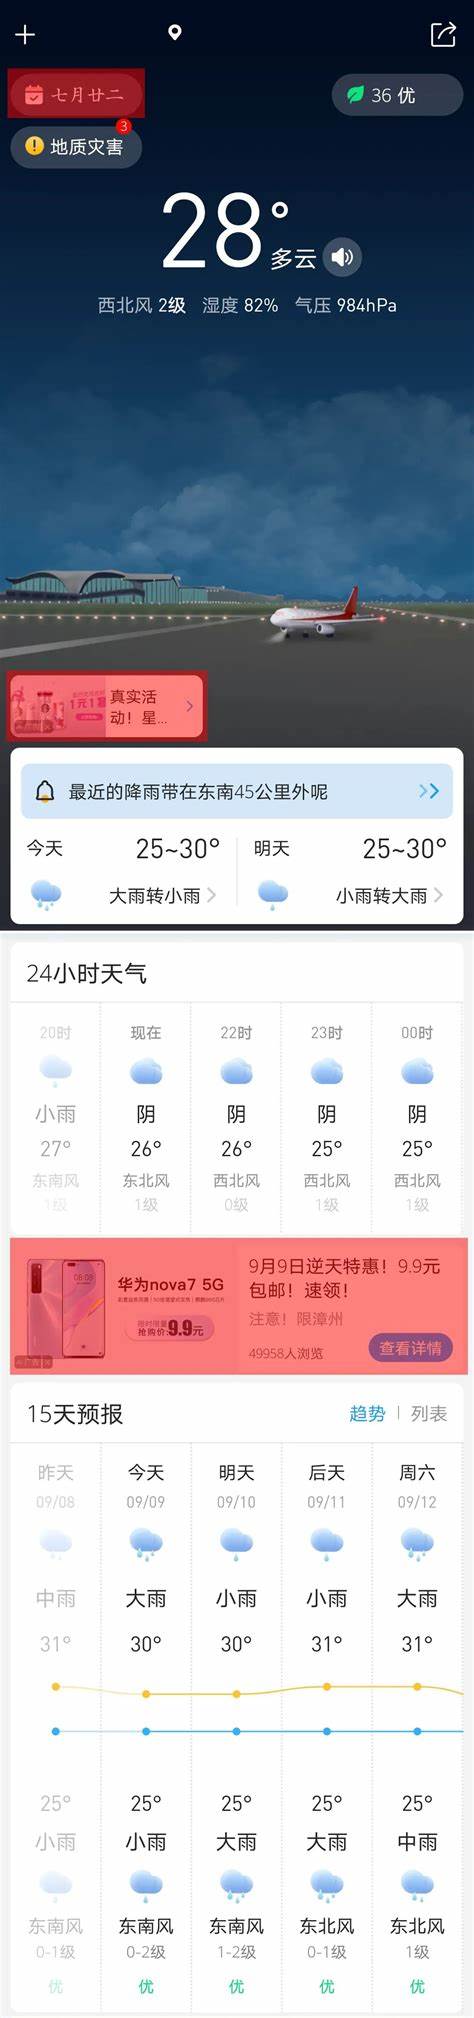 丹东天气预报7天查询系统